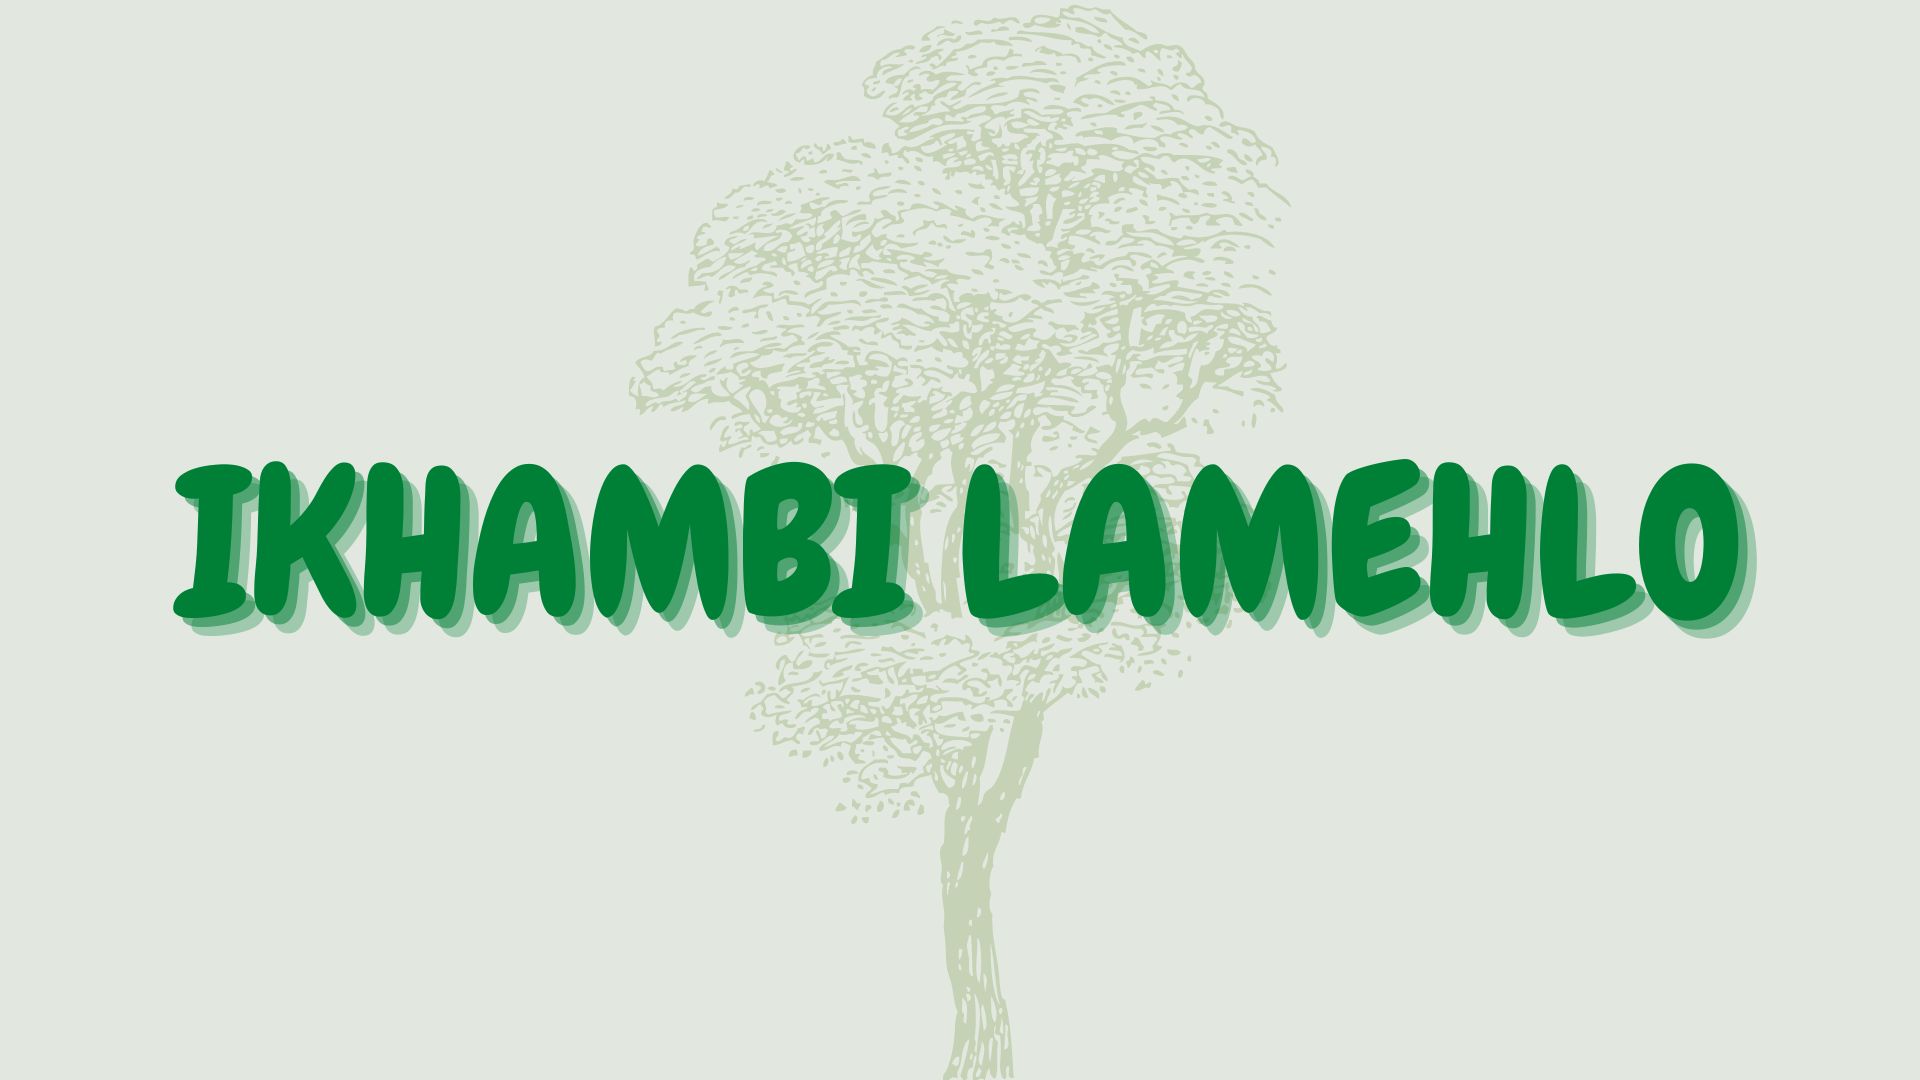 Ikhambi lamehlo